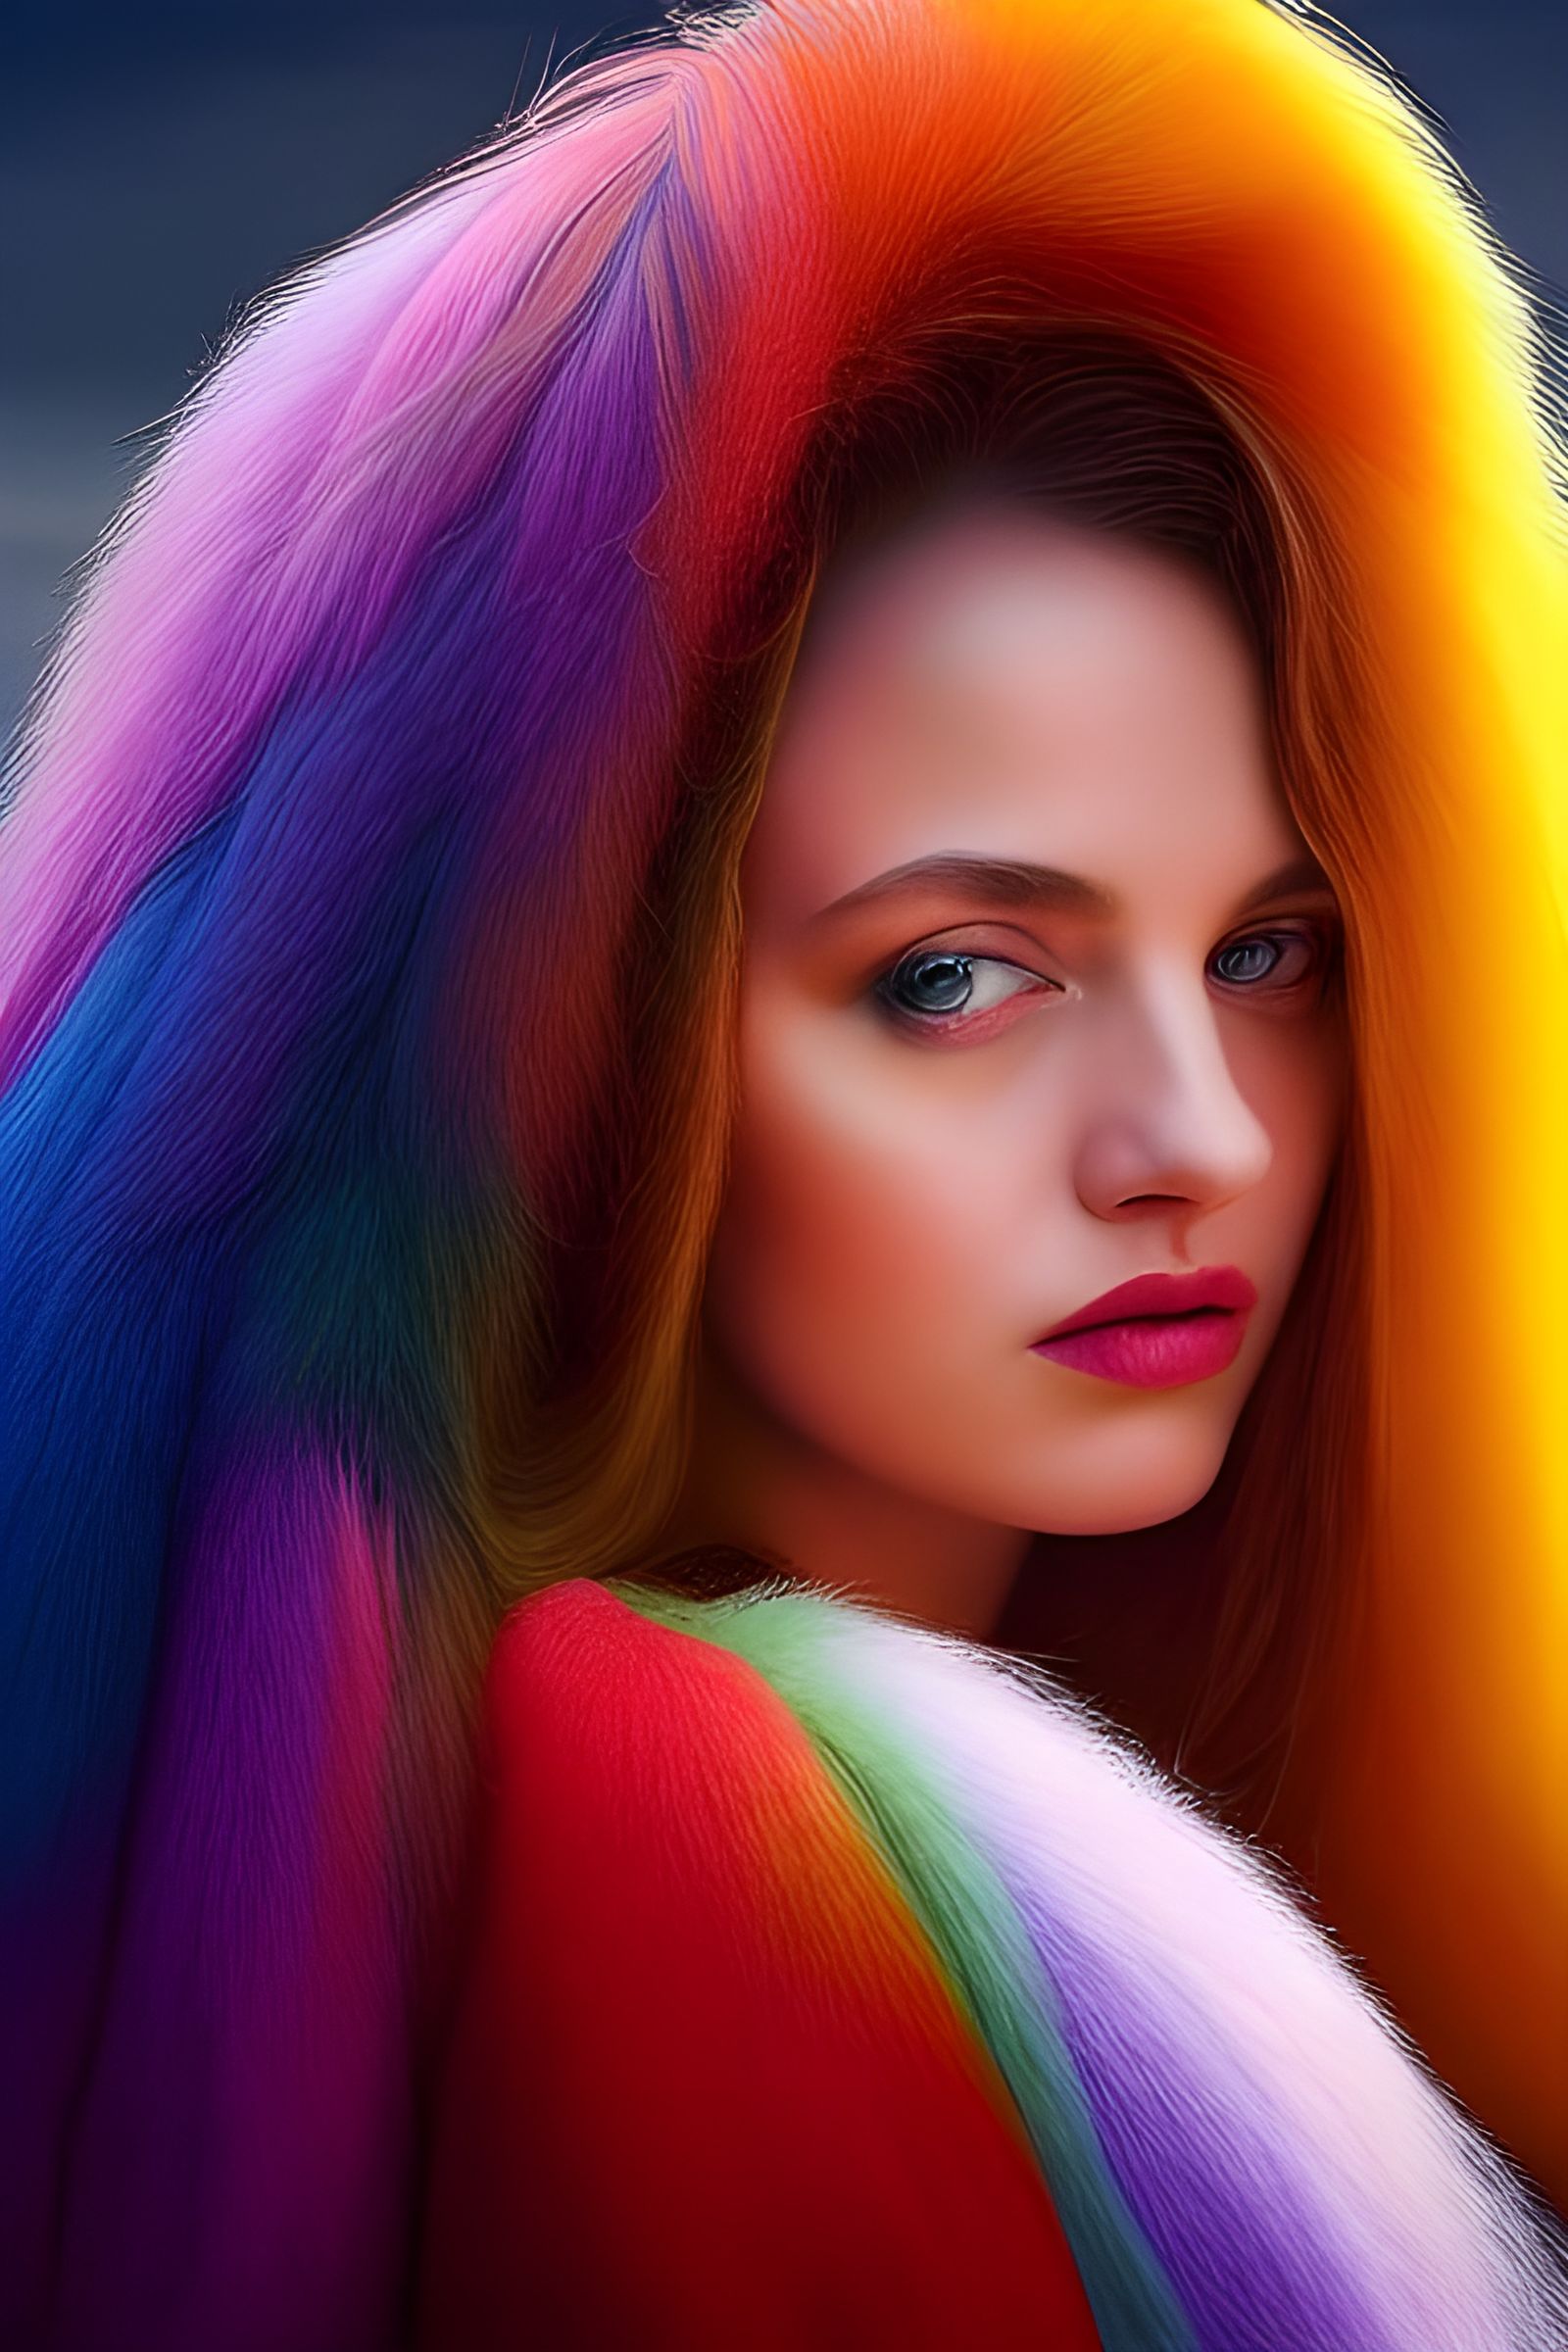 Colorful portrait